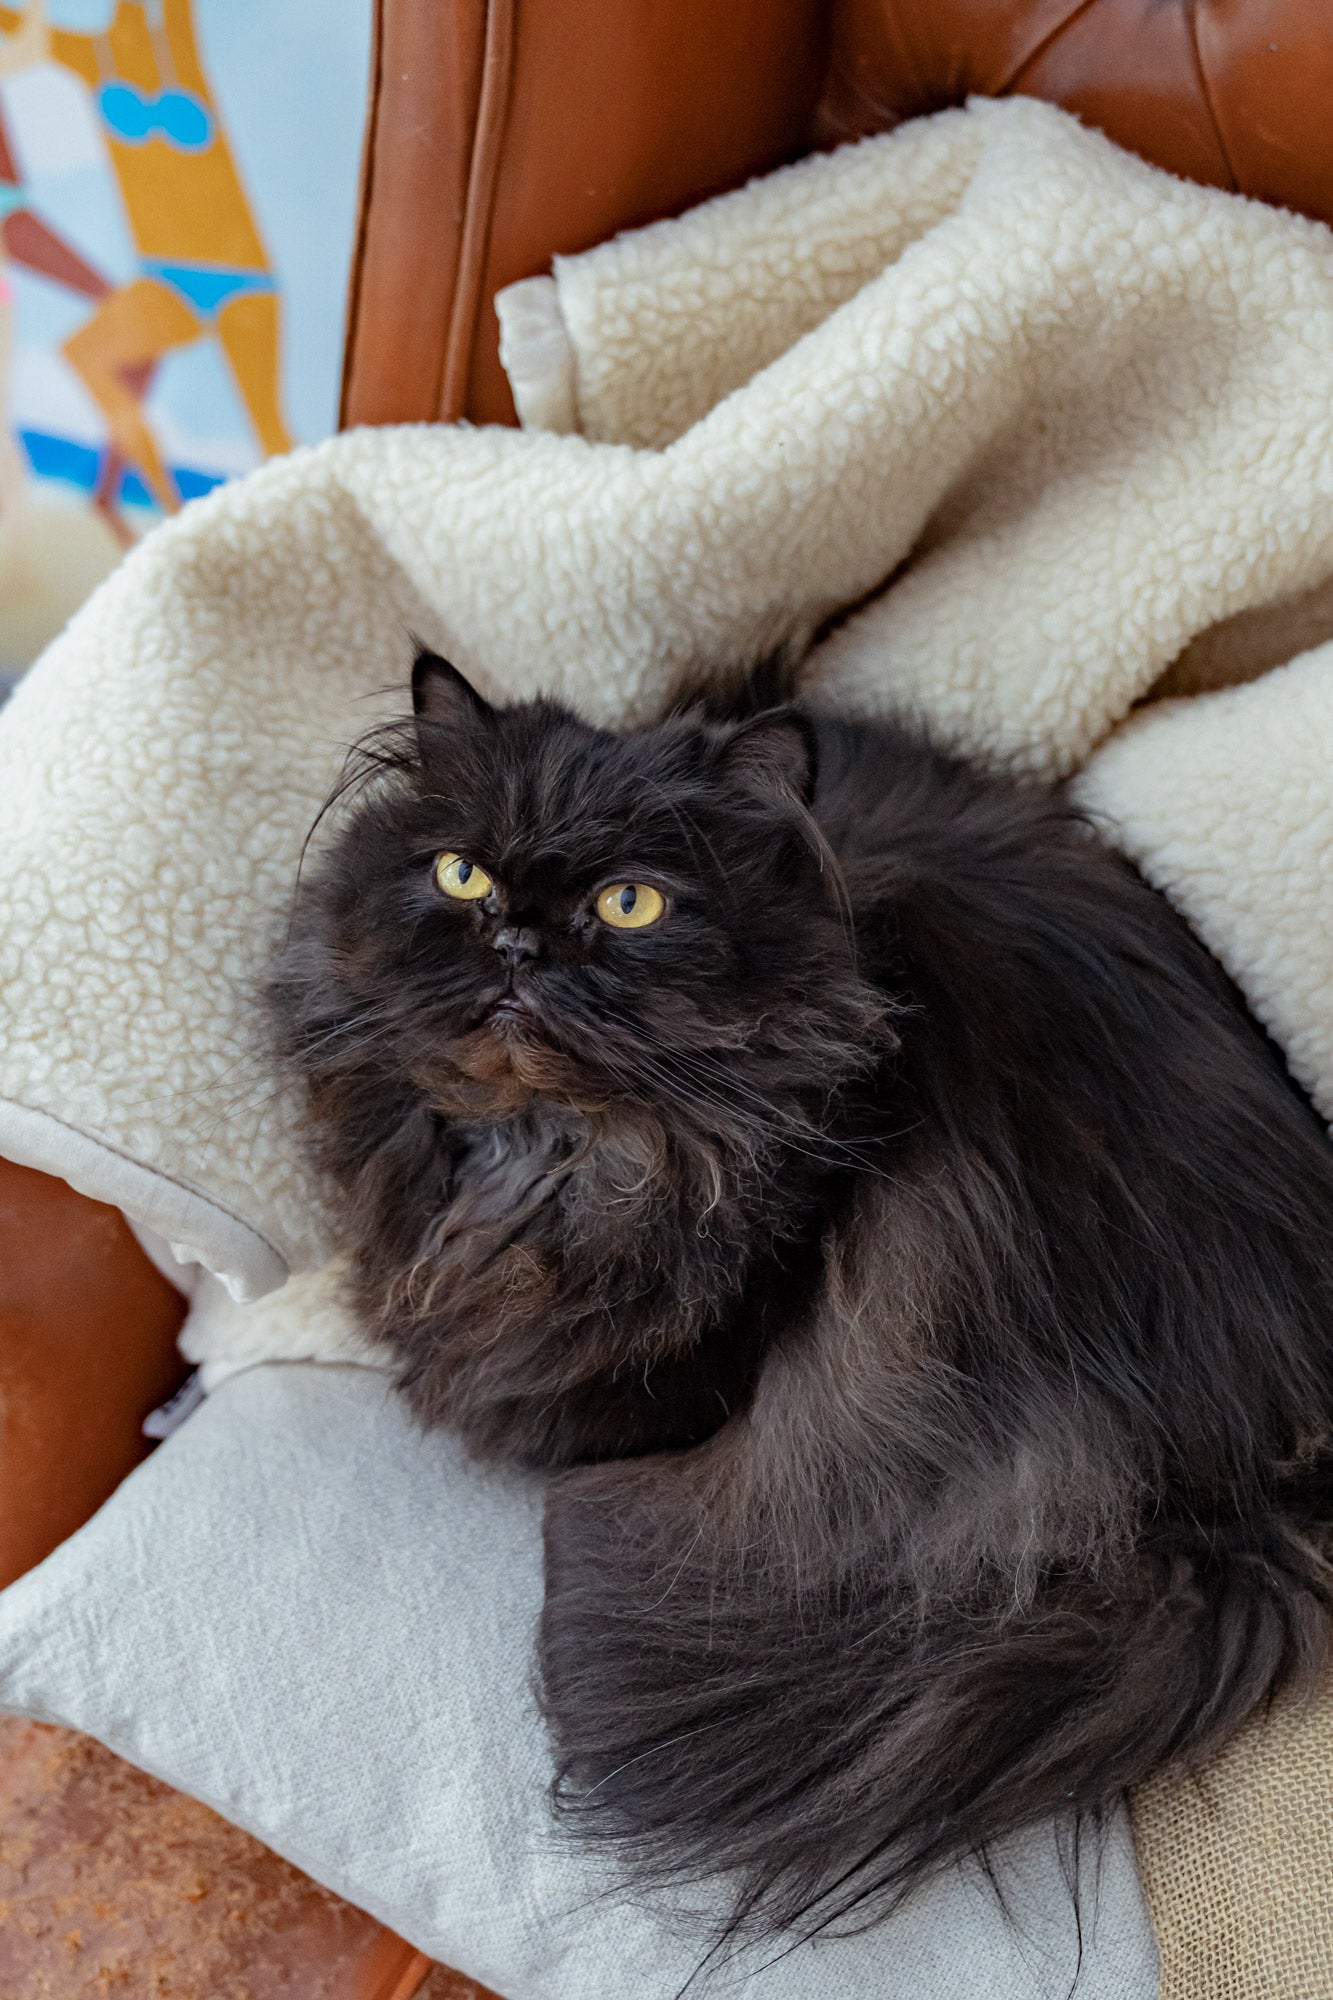 Cat on cozy blanket